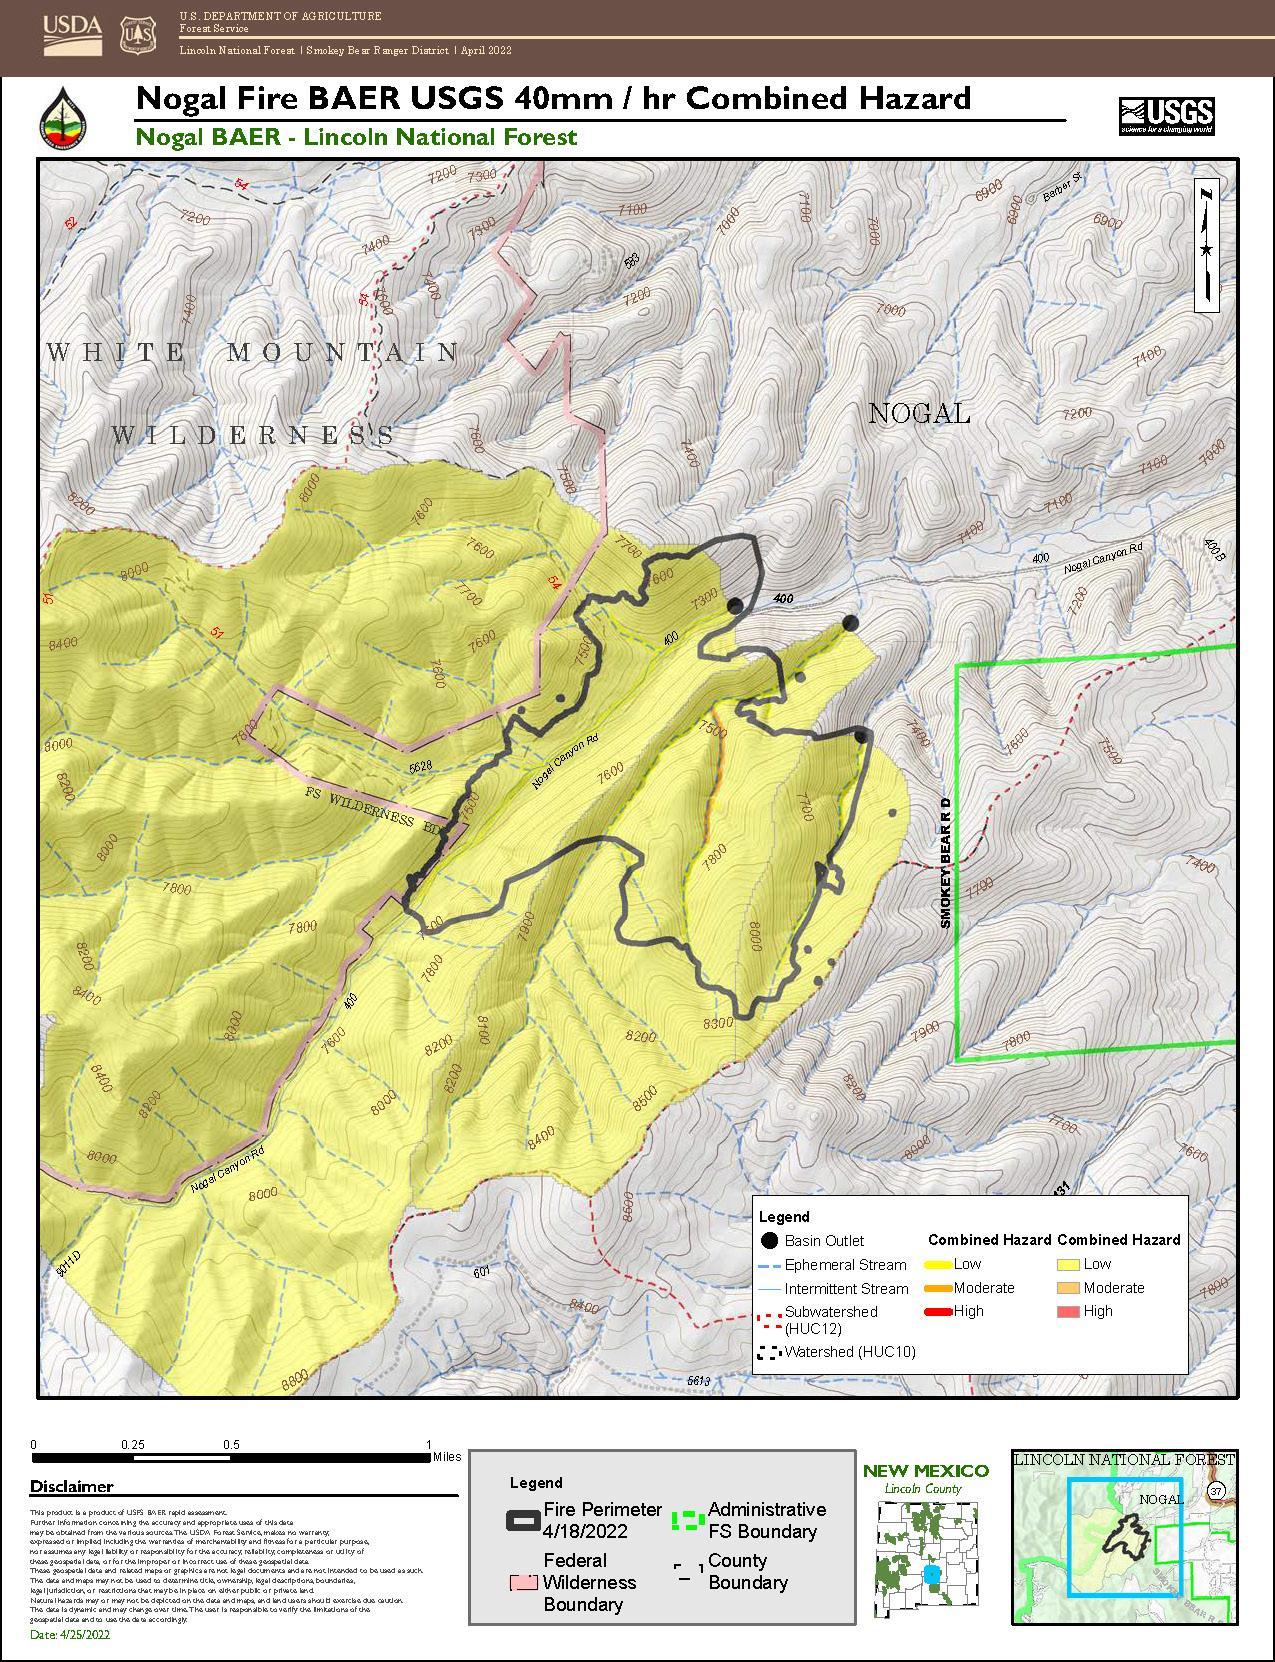 Nogal Canyon USGS Post-Fire Debris-Flow Hazards